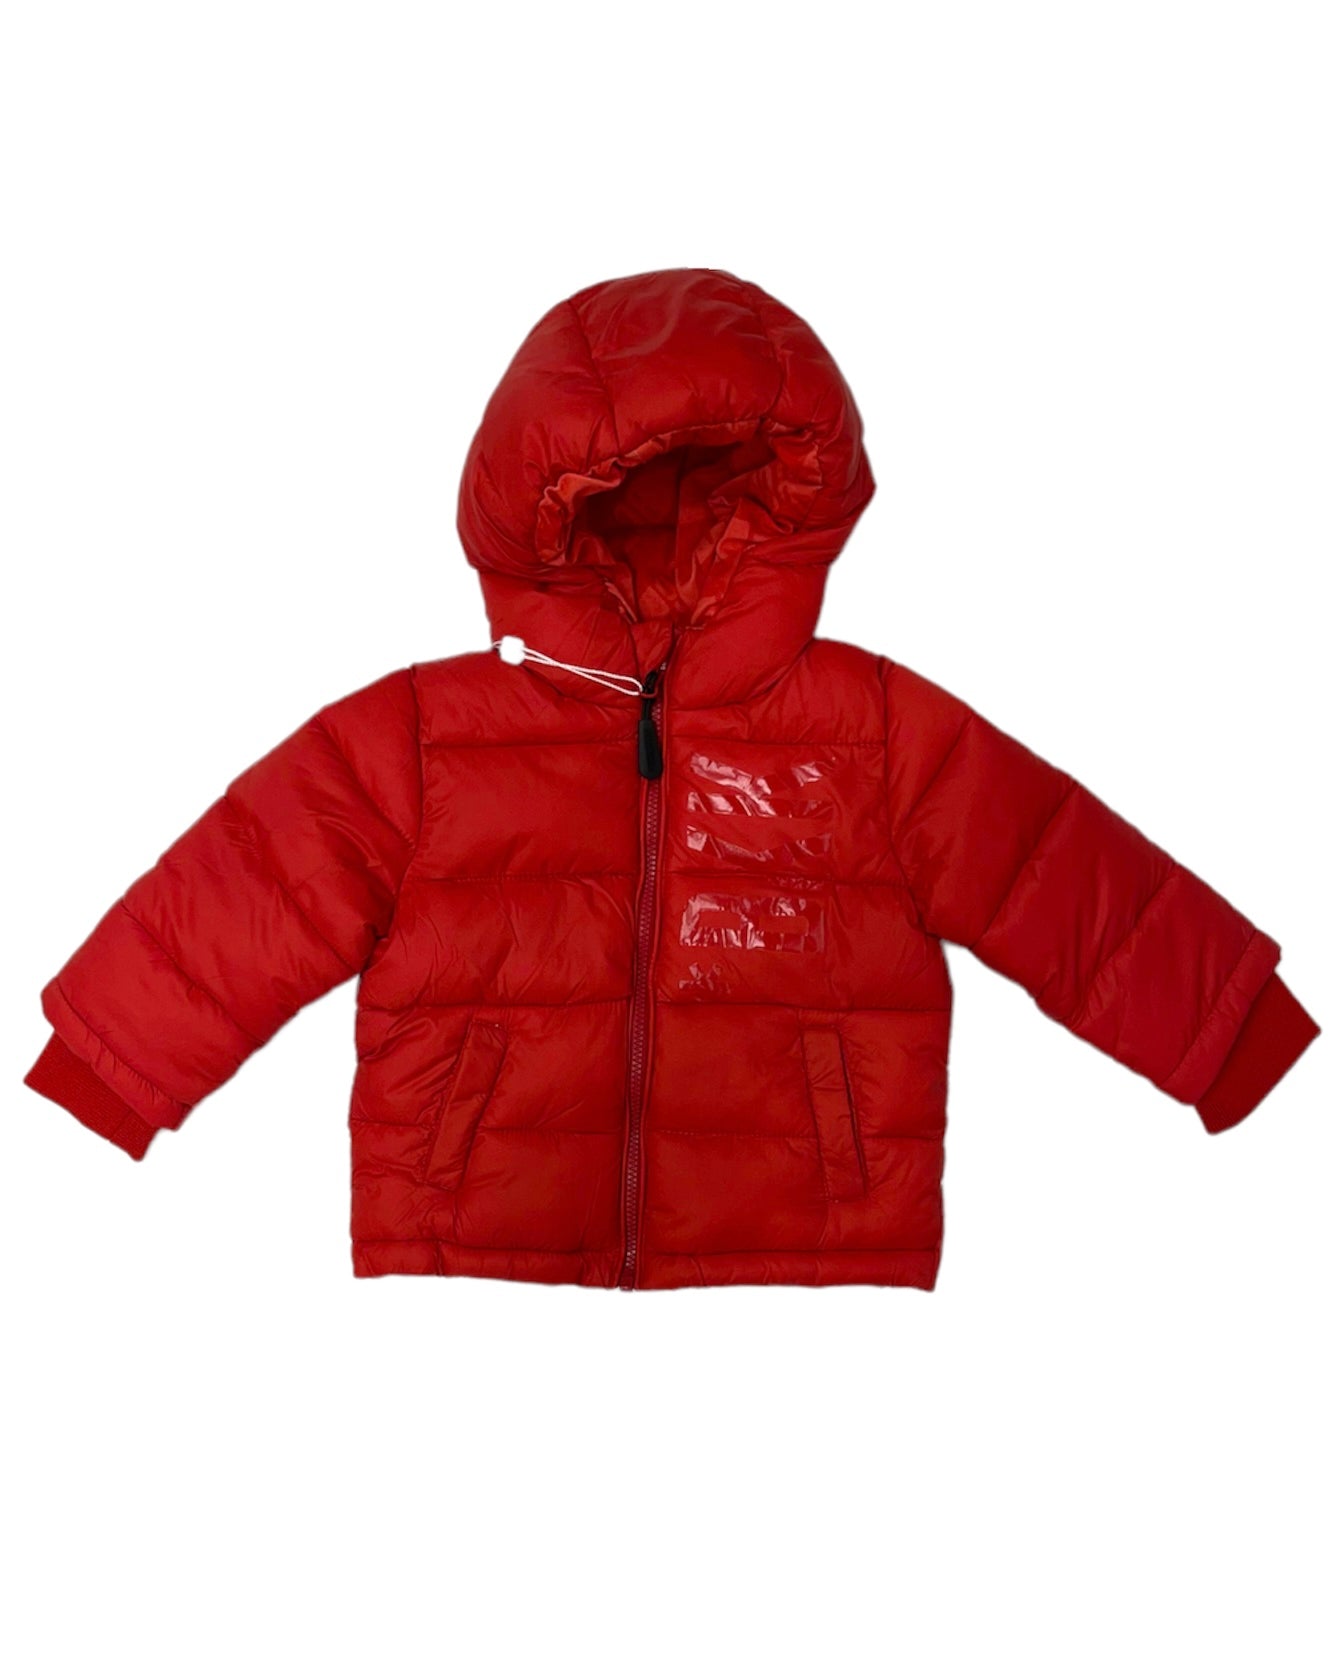 BIKKEMBERGS - Piumino rosso con cappuccio e tasche bambino/neonato